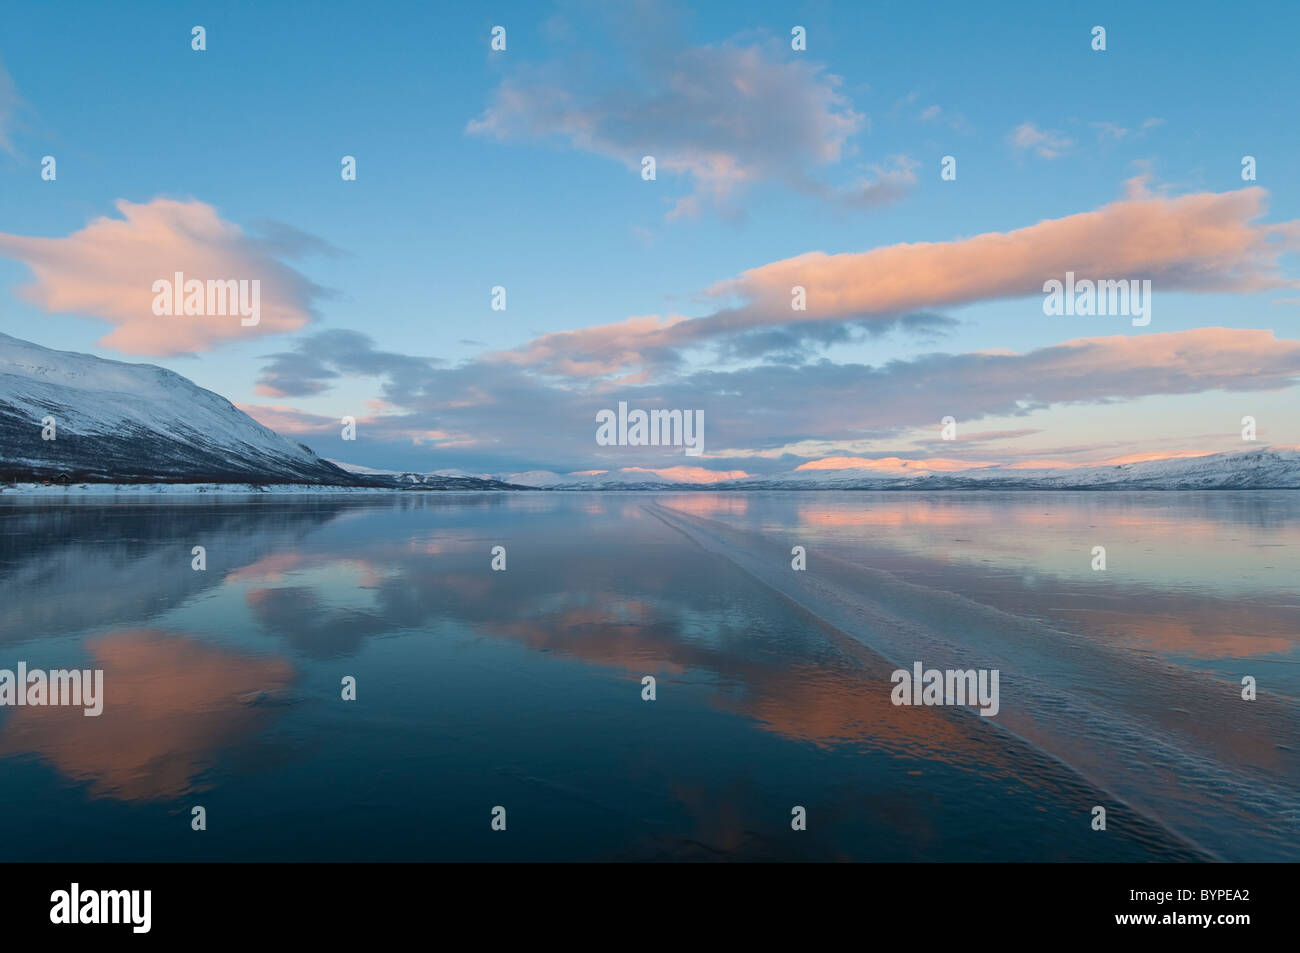 Berge im Fjaell spiegeln sich im zugefrorenen See Tornetraesk, Abisko, Lappland, Schweden Stock Photo